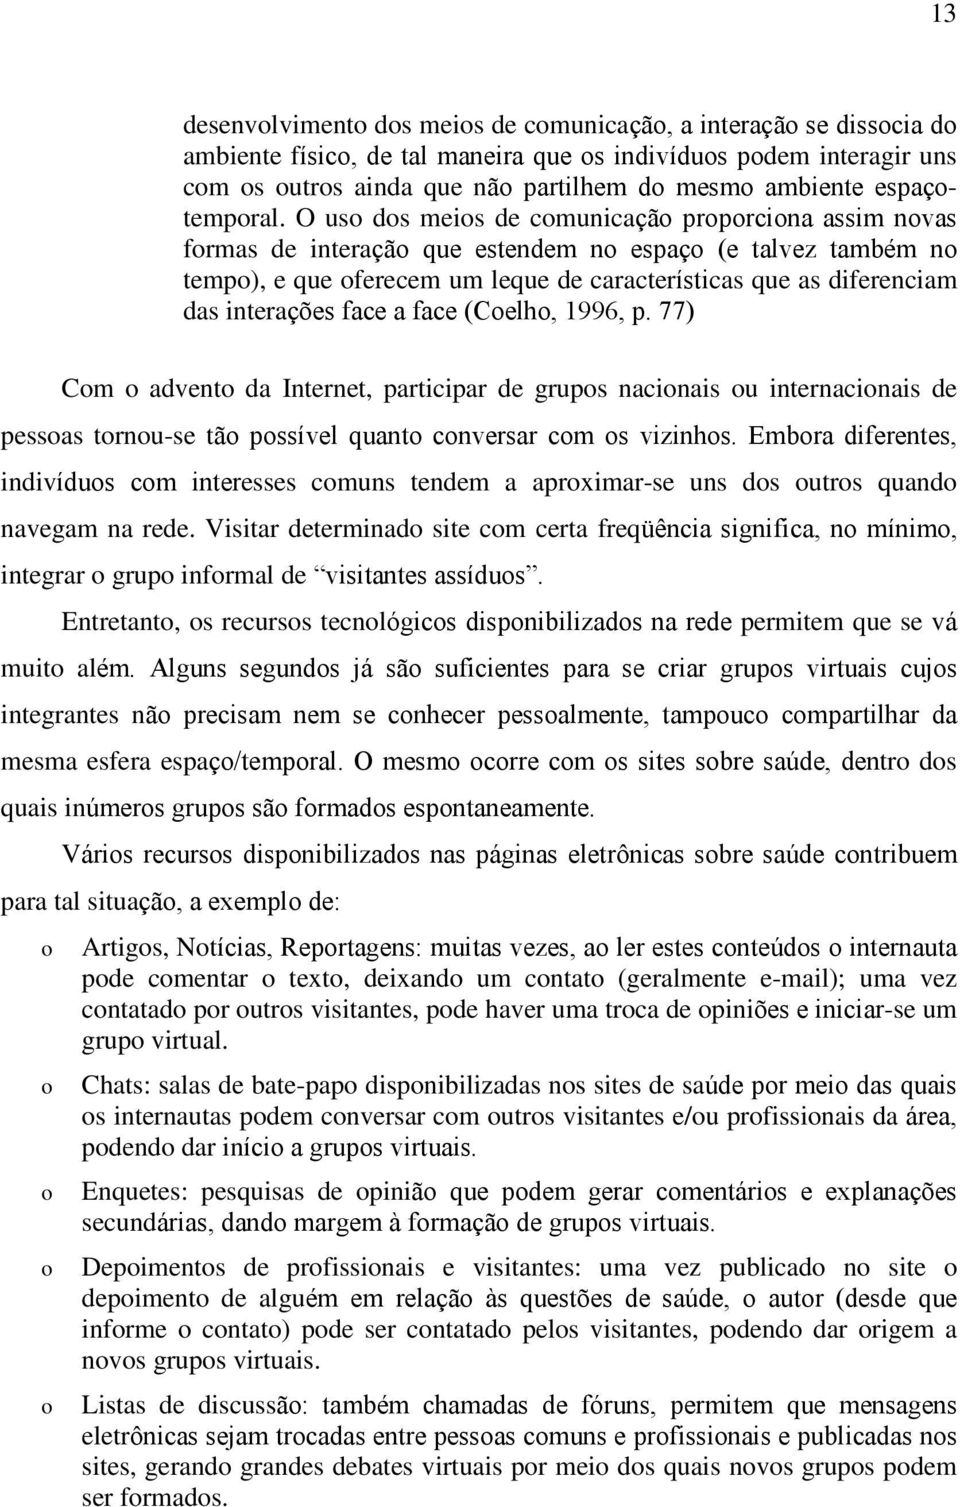 (Celh, 1996, p. 77) Cm advent da Internet, participar de grups nacinais u internacinais de pessas trnu-se tã pssível quant cnversar cm s vizinhs.